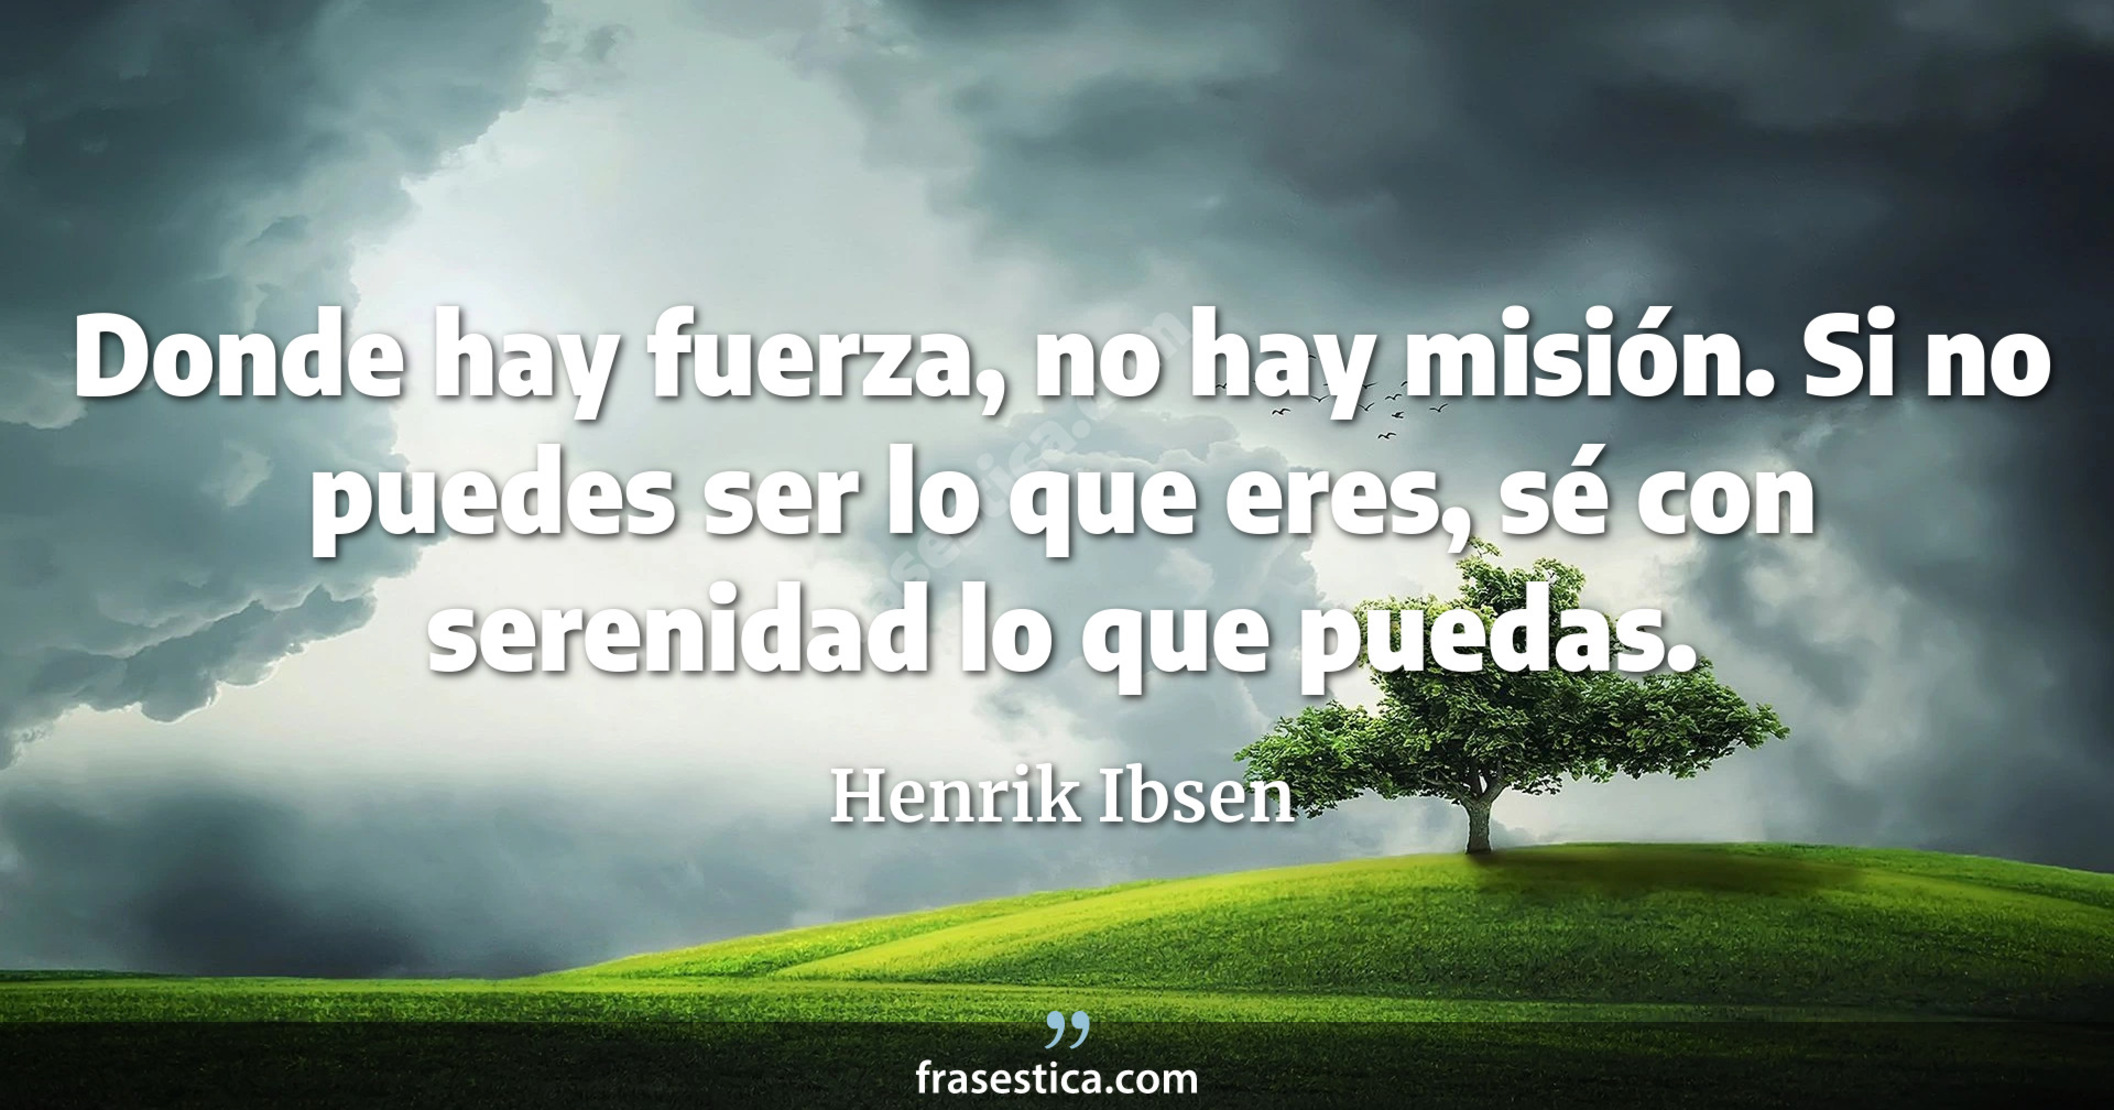 Donde hay fuerza, no hay misión. Si no puedes ser lo que eres, sé con serenidad lo que puedas. - Henrik Ibsen